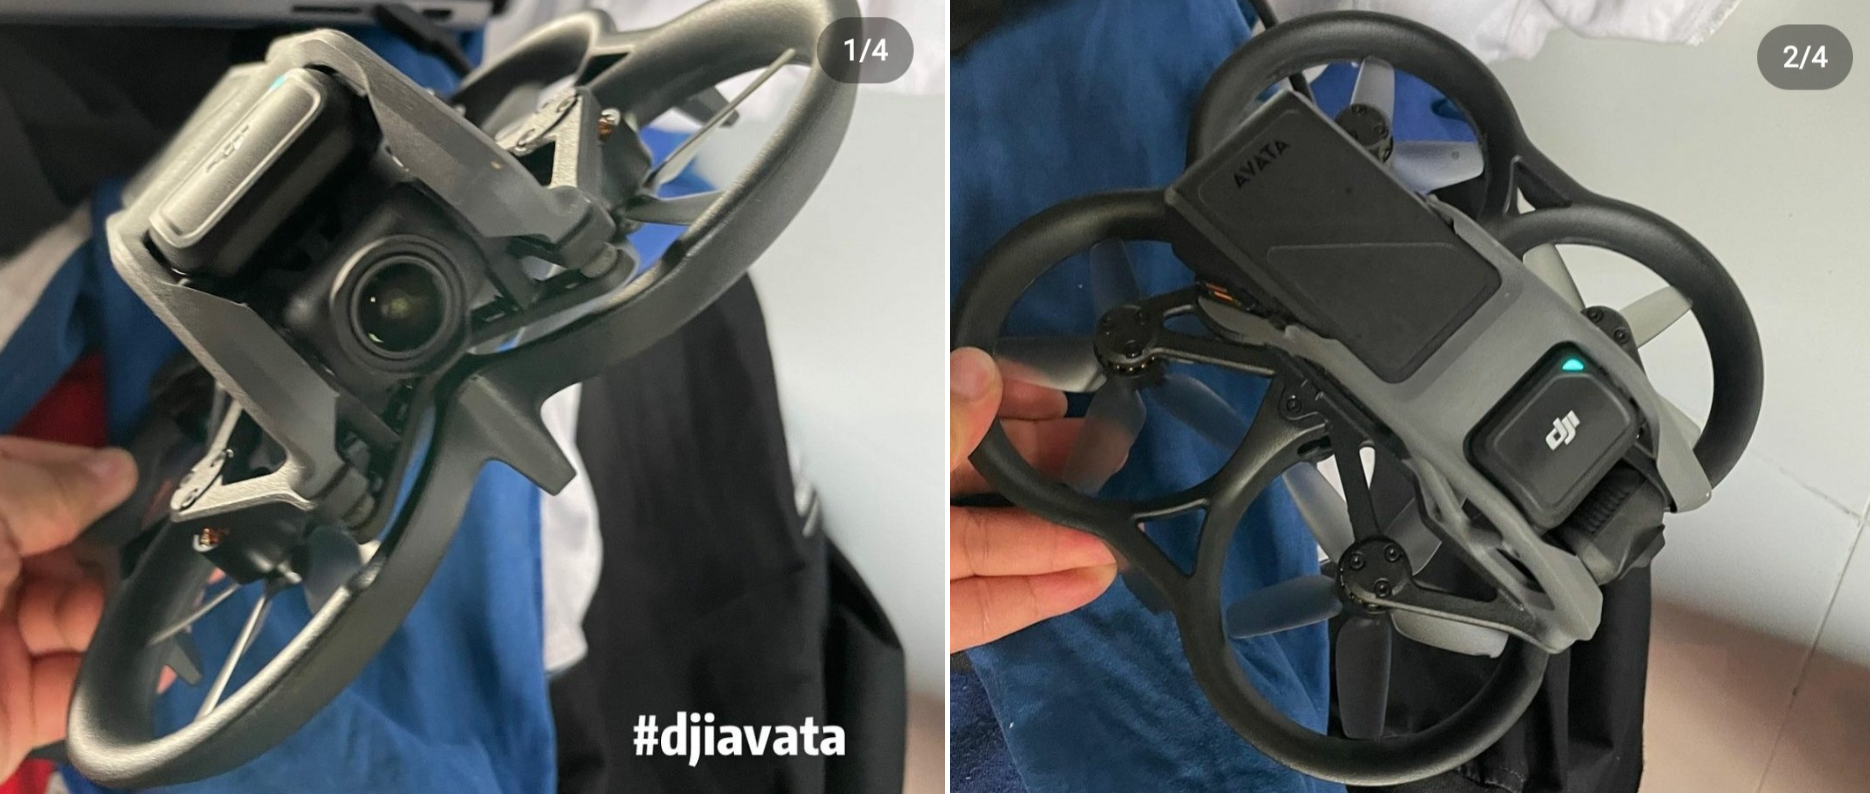 Publication de photos et d'une vidéo du drone FPV Avata de DJI, qui n'a pas été annoncé